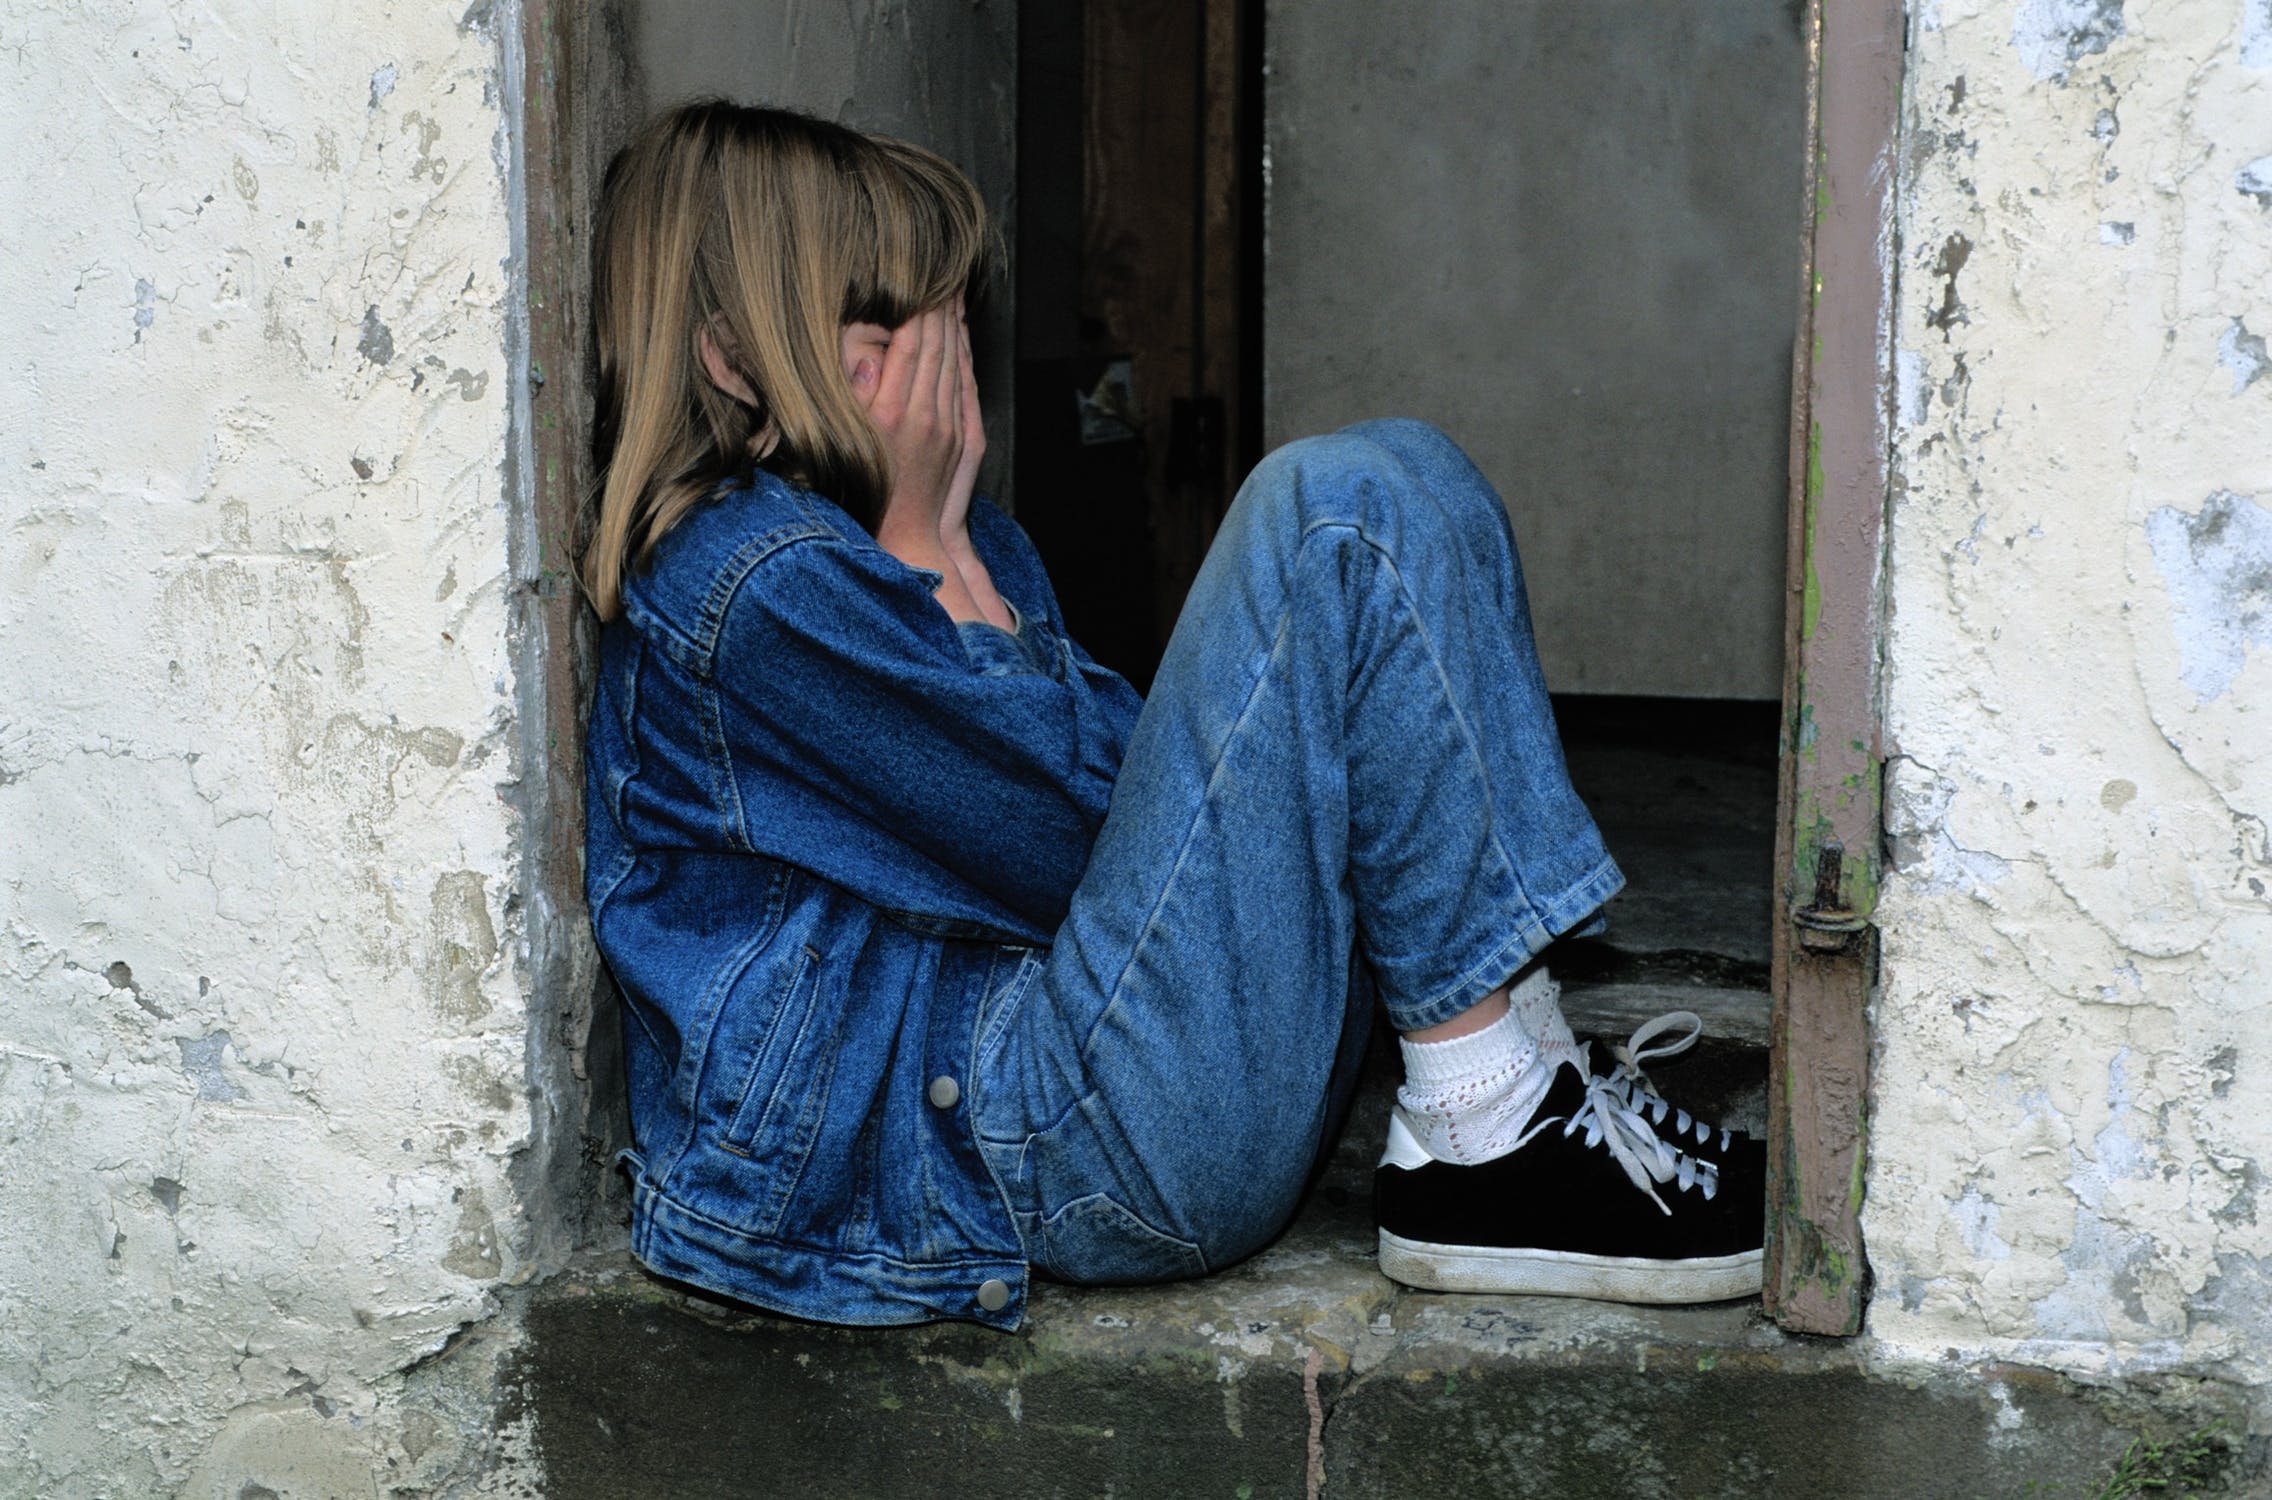 Child hiding in a doorway | Source: Pexels